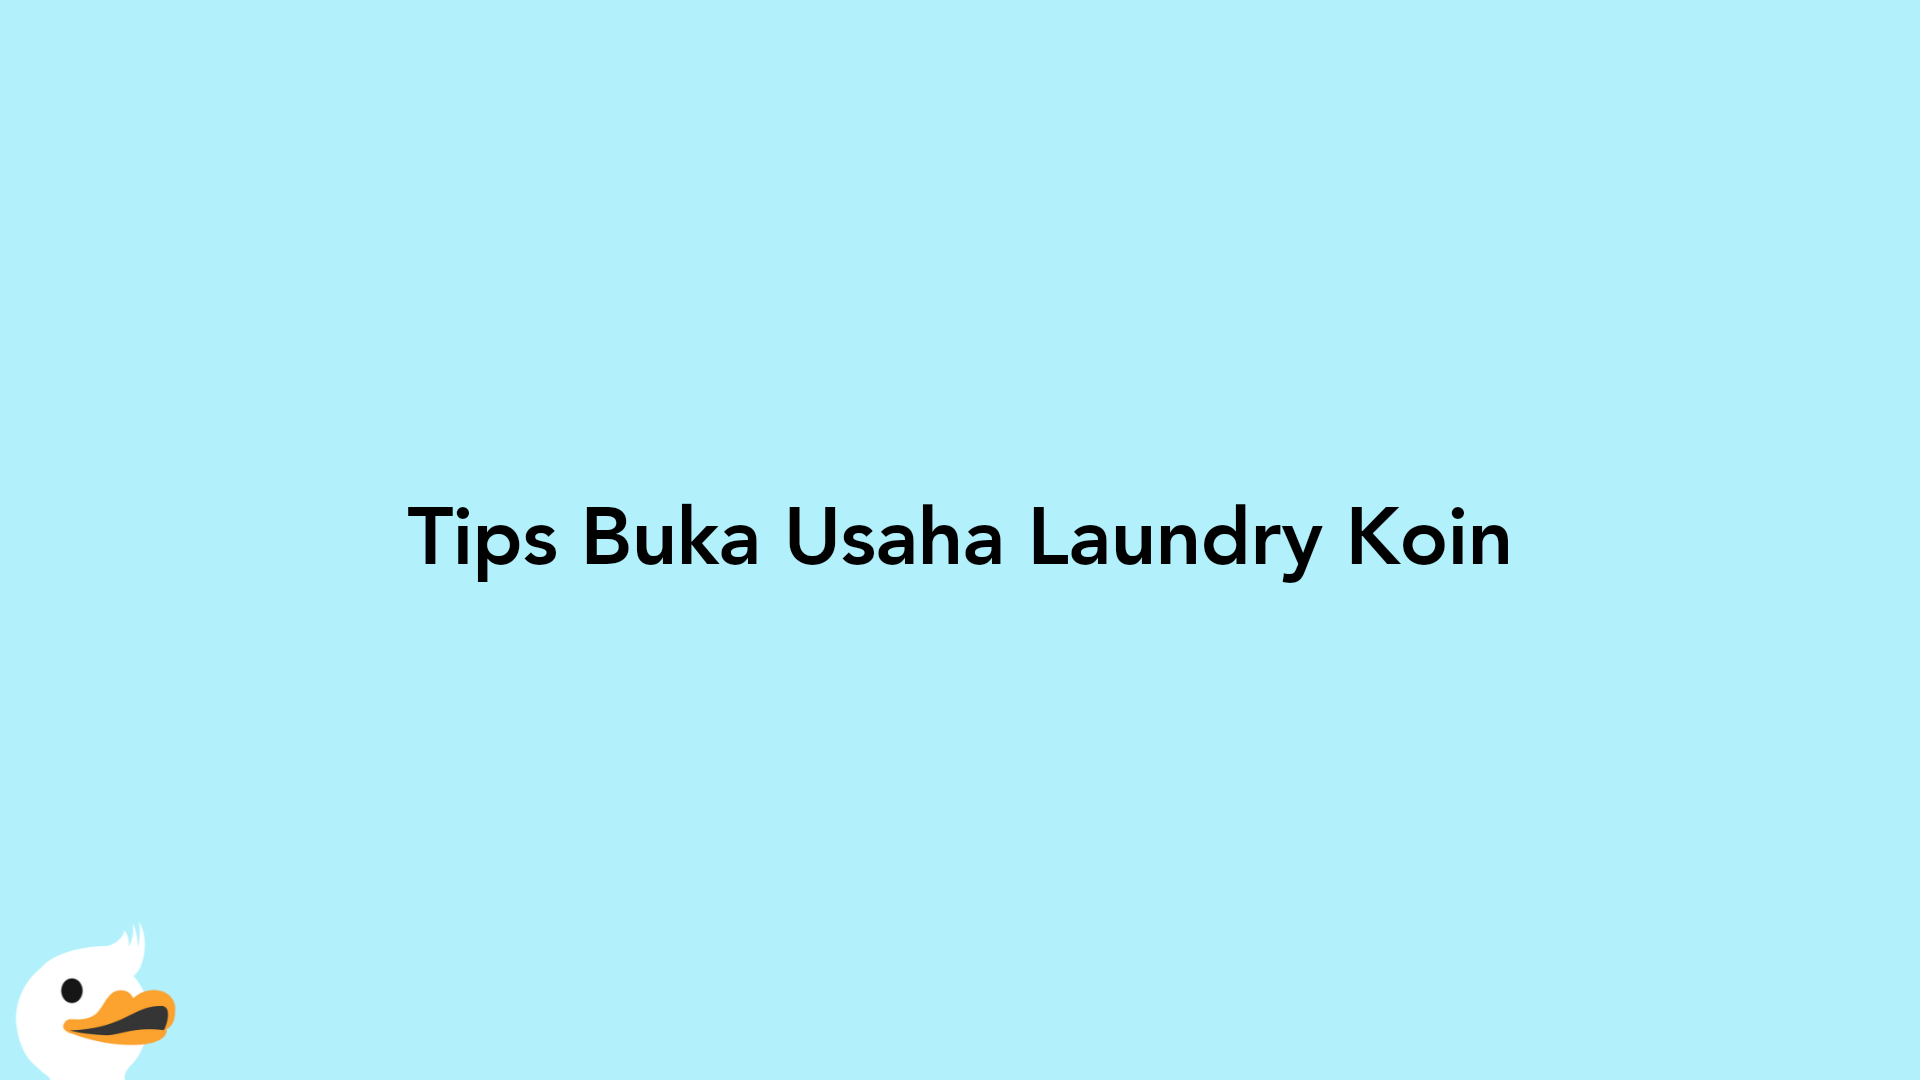 Tips Buka Usaha Laundry Koin